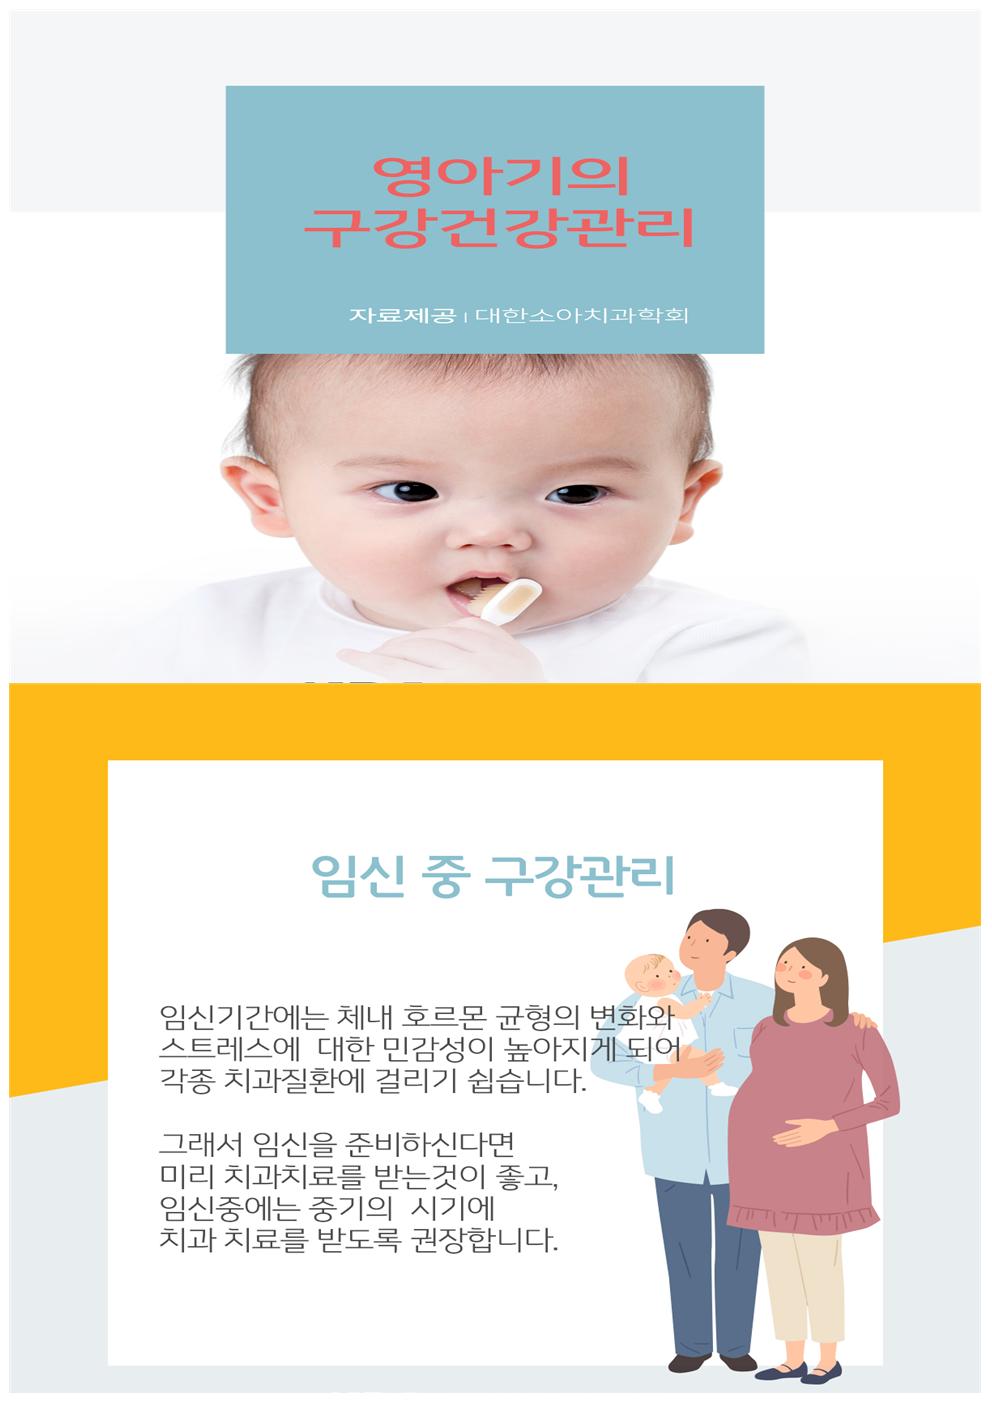 생애주기별 건강한 치아이야기 - ⓵ 영아기 구강건강관리